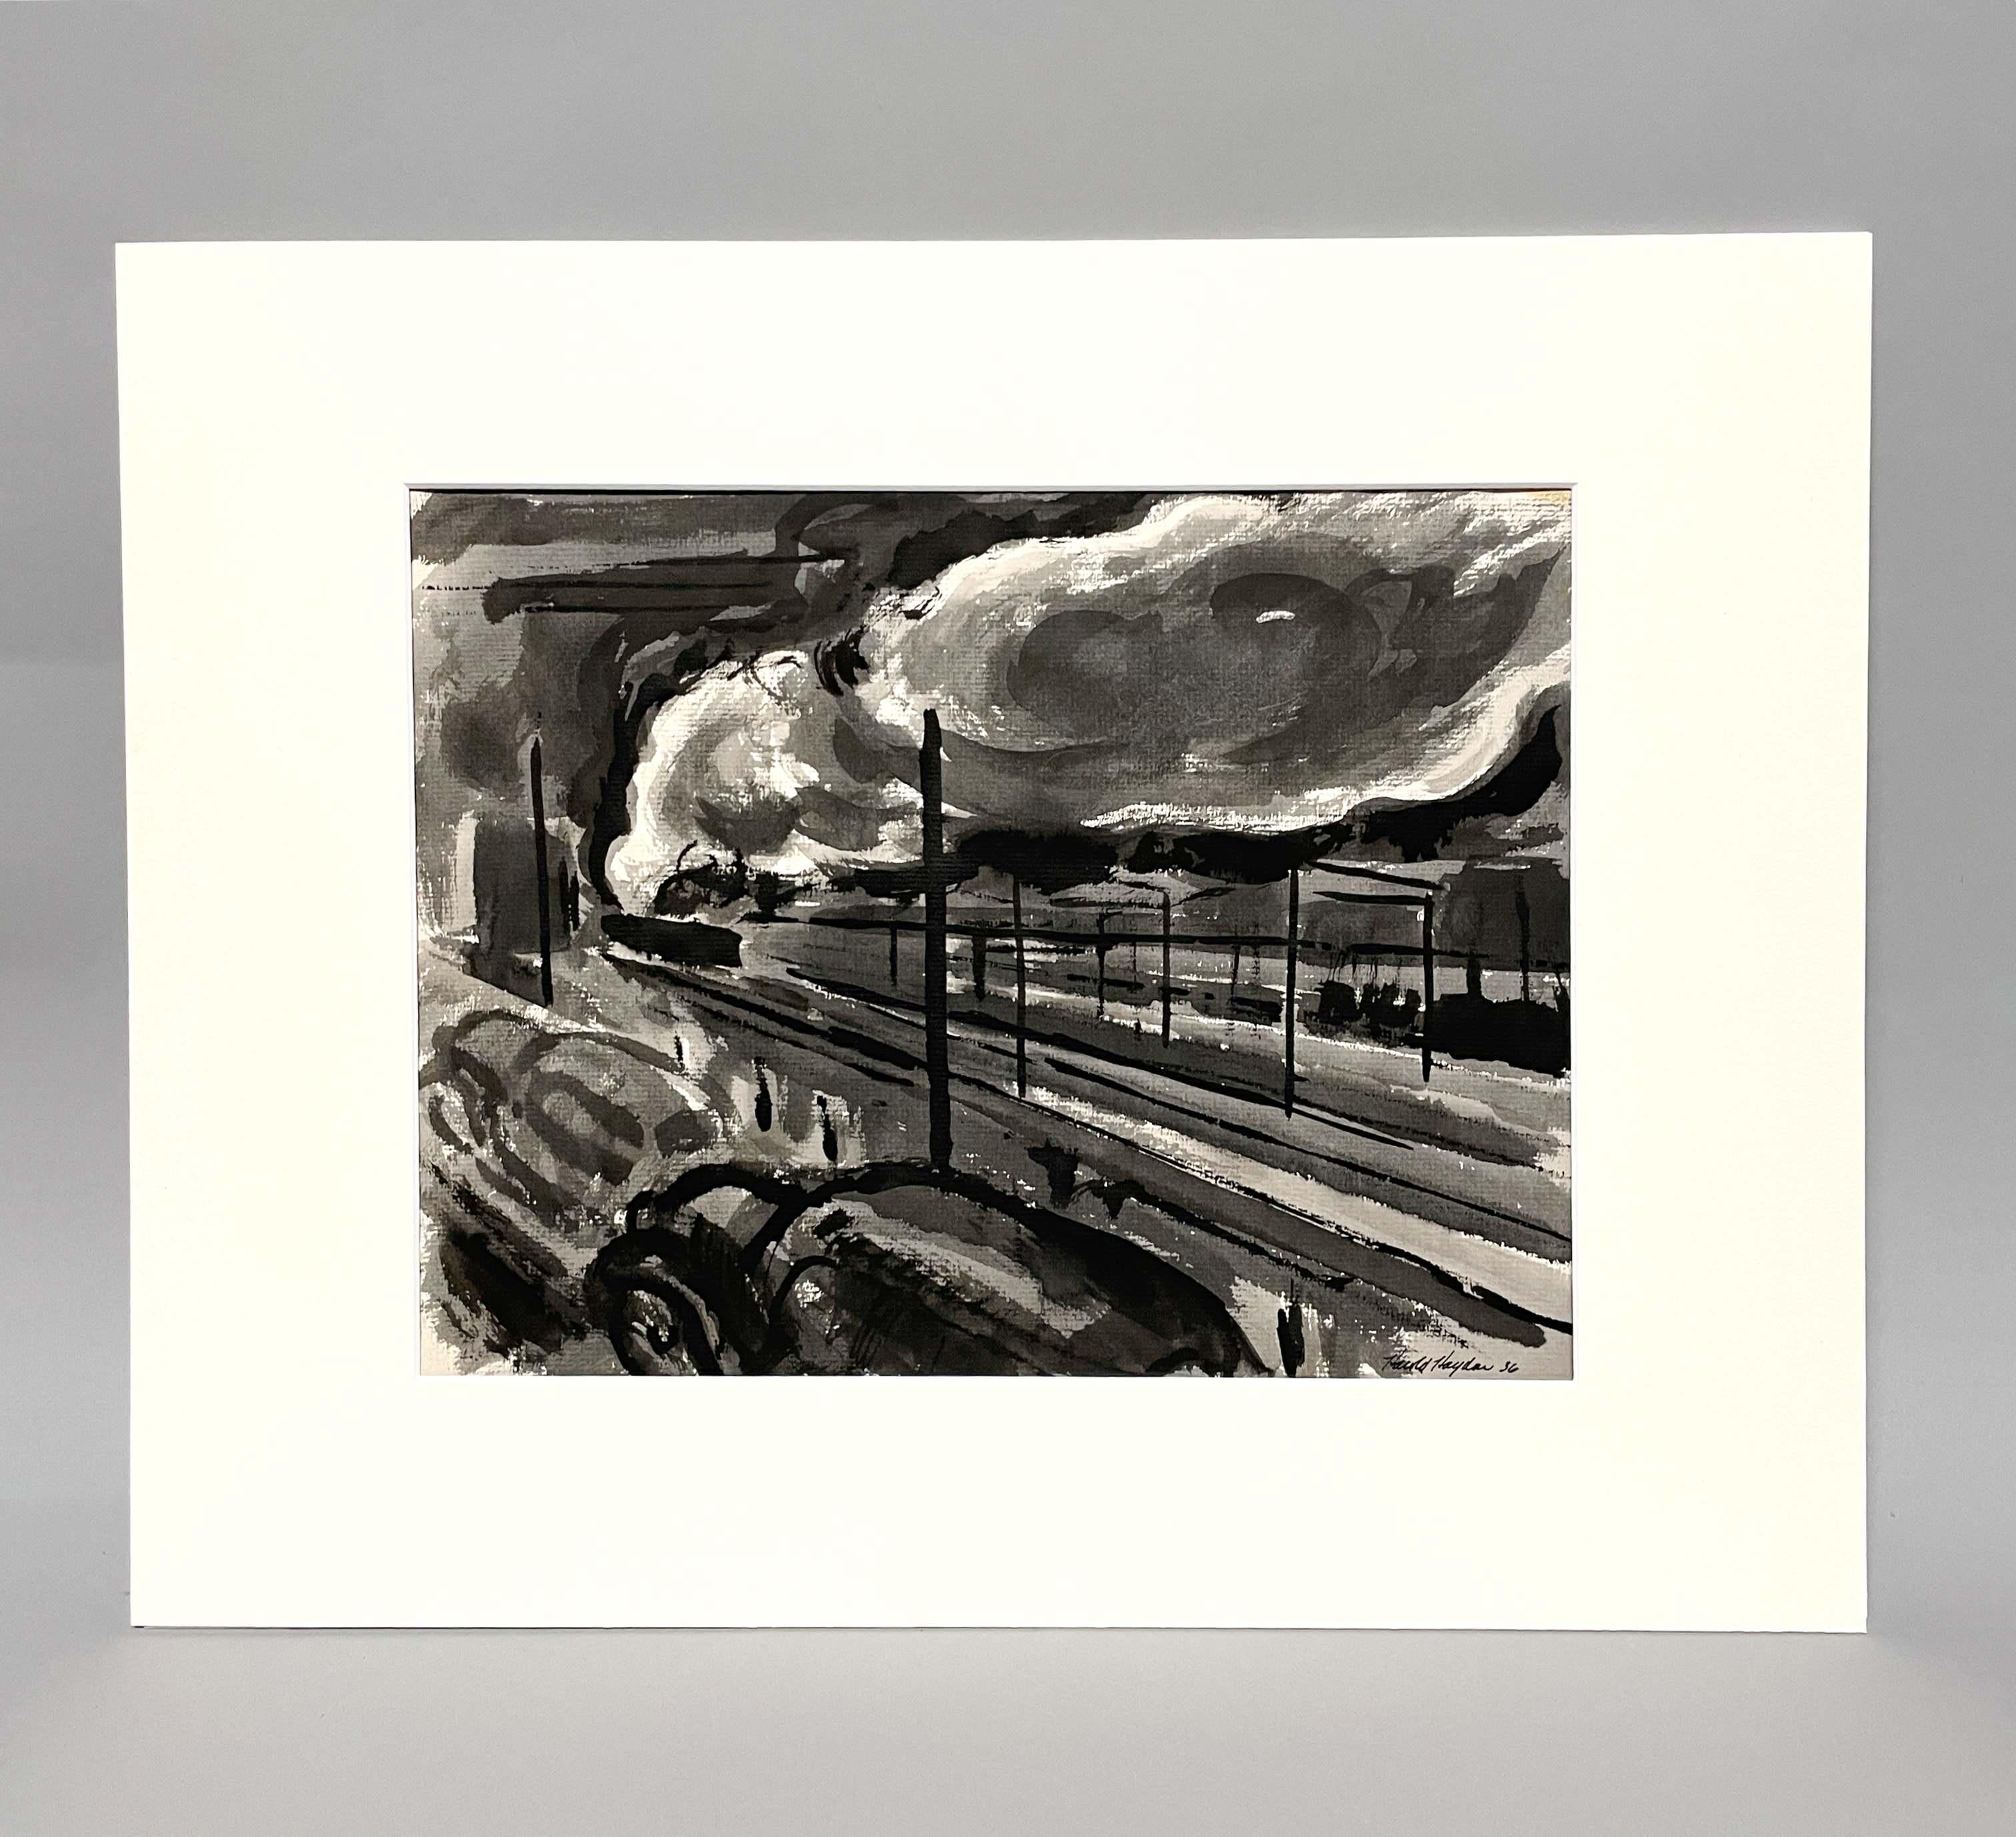 Eine Zeichnung des Künstlers Harold Haydon von 1936 mit Tinte auf Papier, die einen Rangierbahnhof darstellt.

Harold Emerson Haydon wurde 1909 in Fort William, Ontario, Kanada, geboren.   Haydon kam 1917 mit seiner Familie nach Chicago und wurde